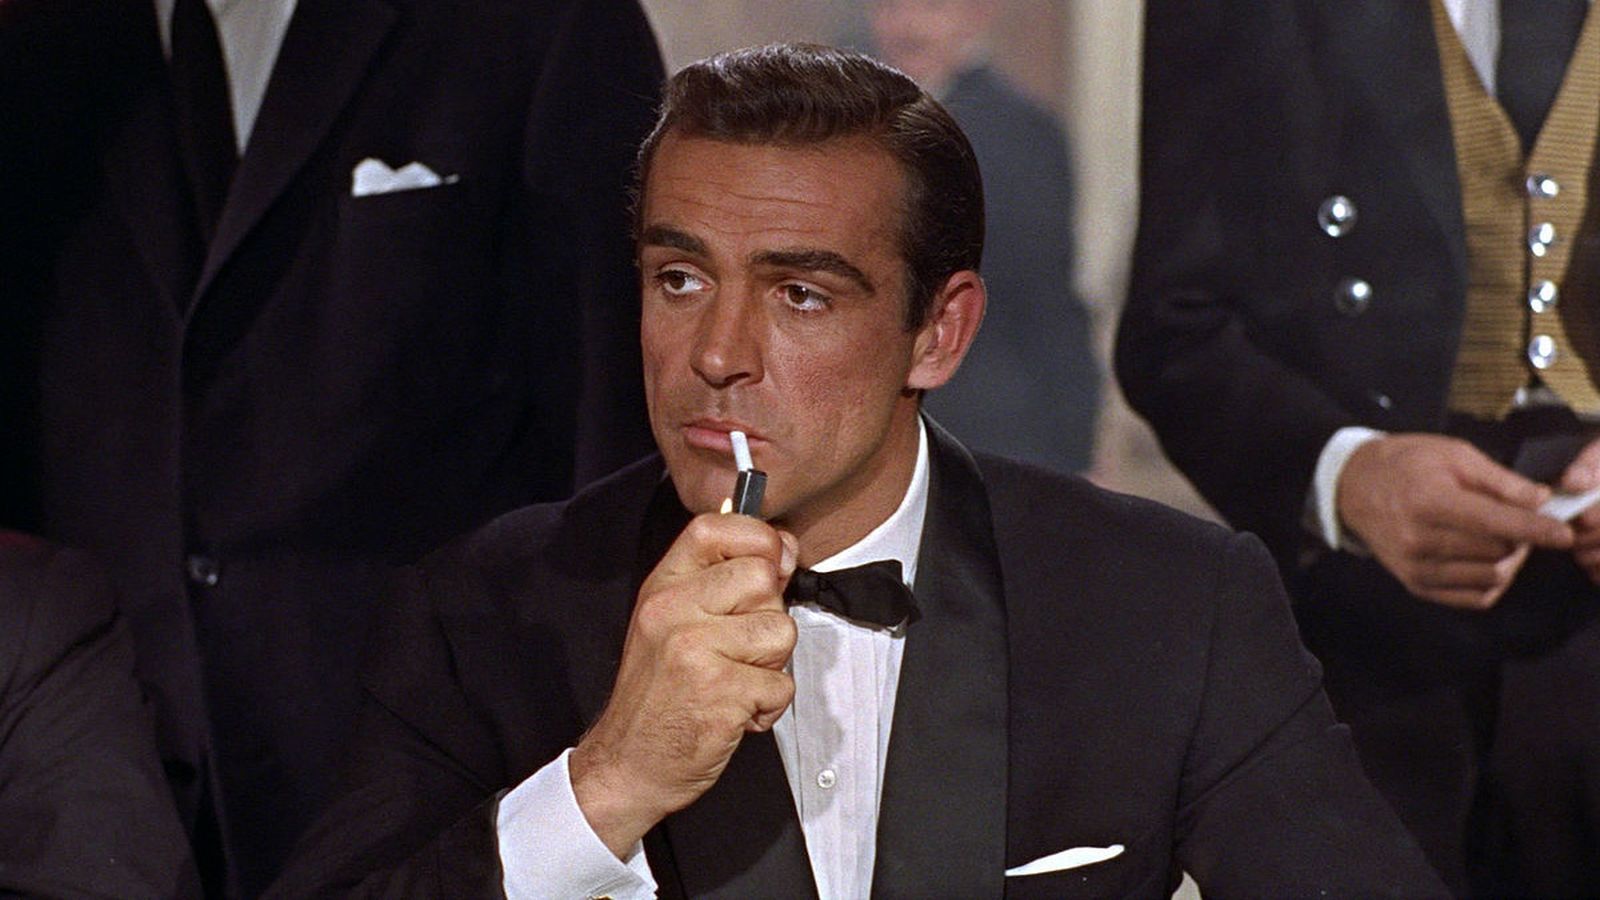 James Bond richiede 'attori maturi, i giovani non hanno stabilità mentale' secondo la casting director